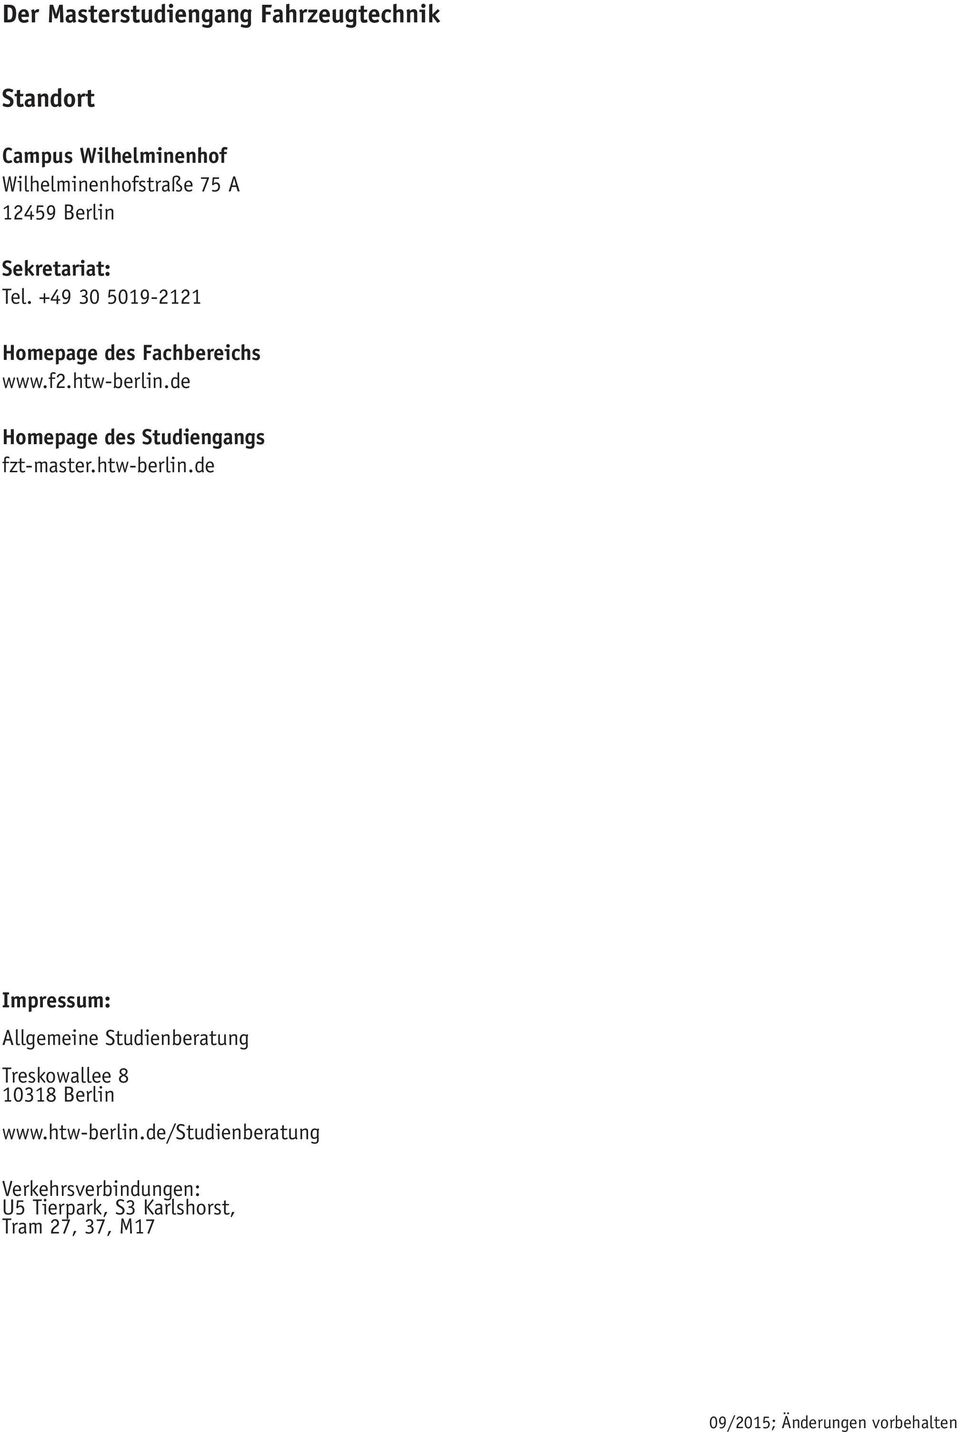 de Homepage des Studiengangs fzt-master.htw-berlin.